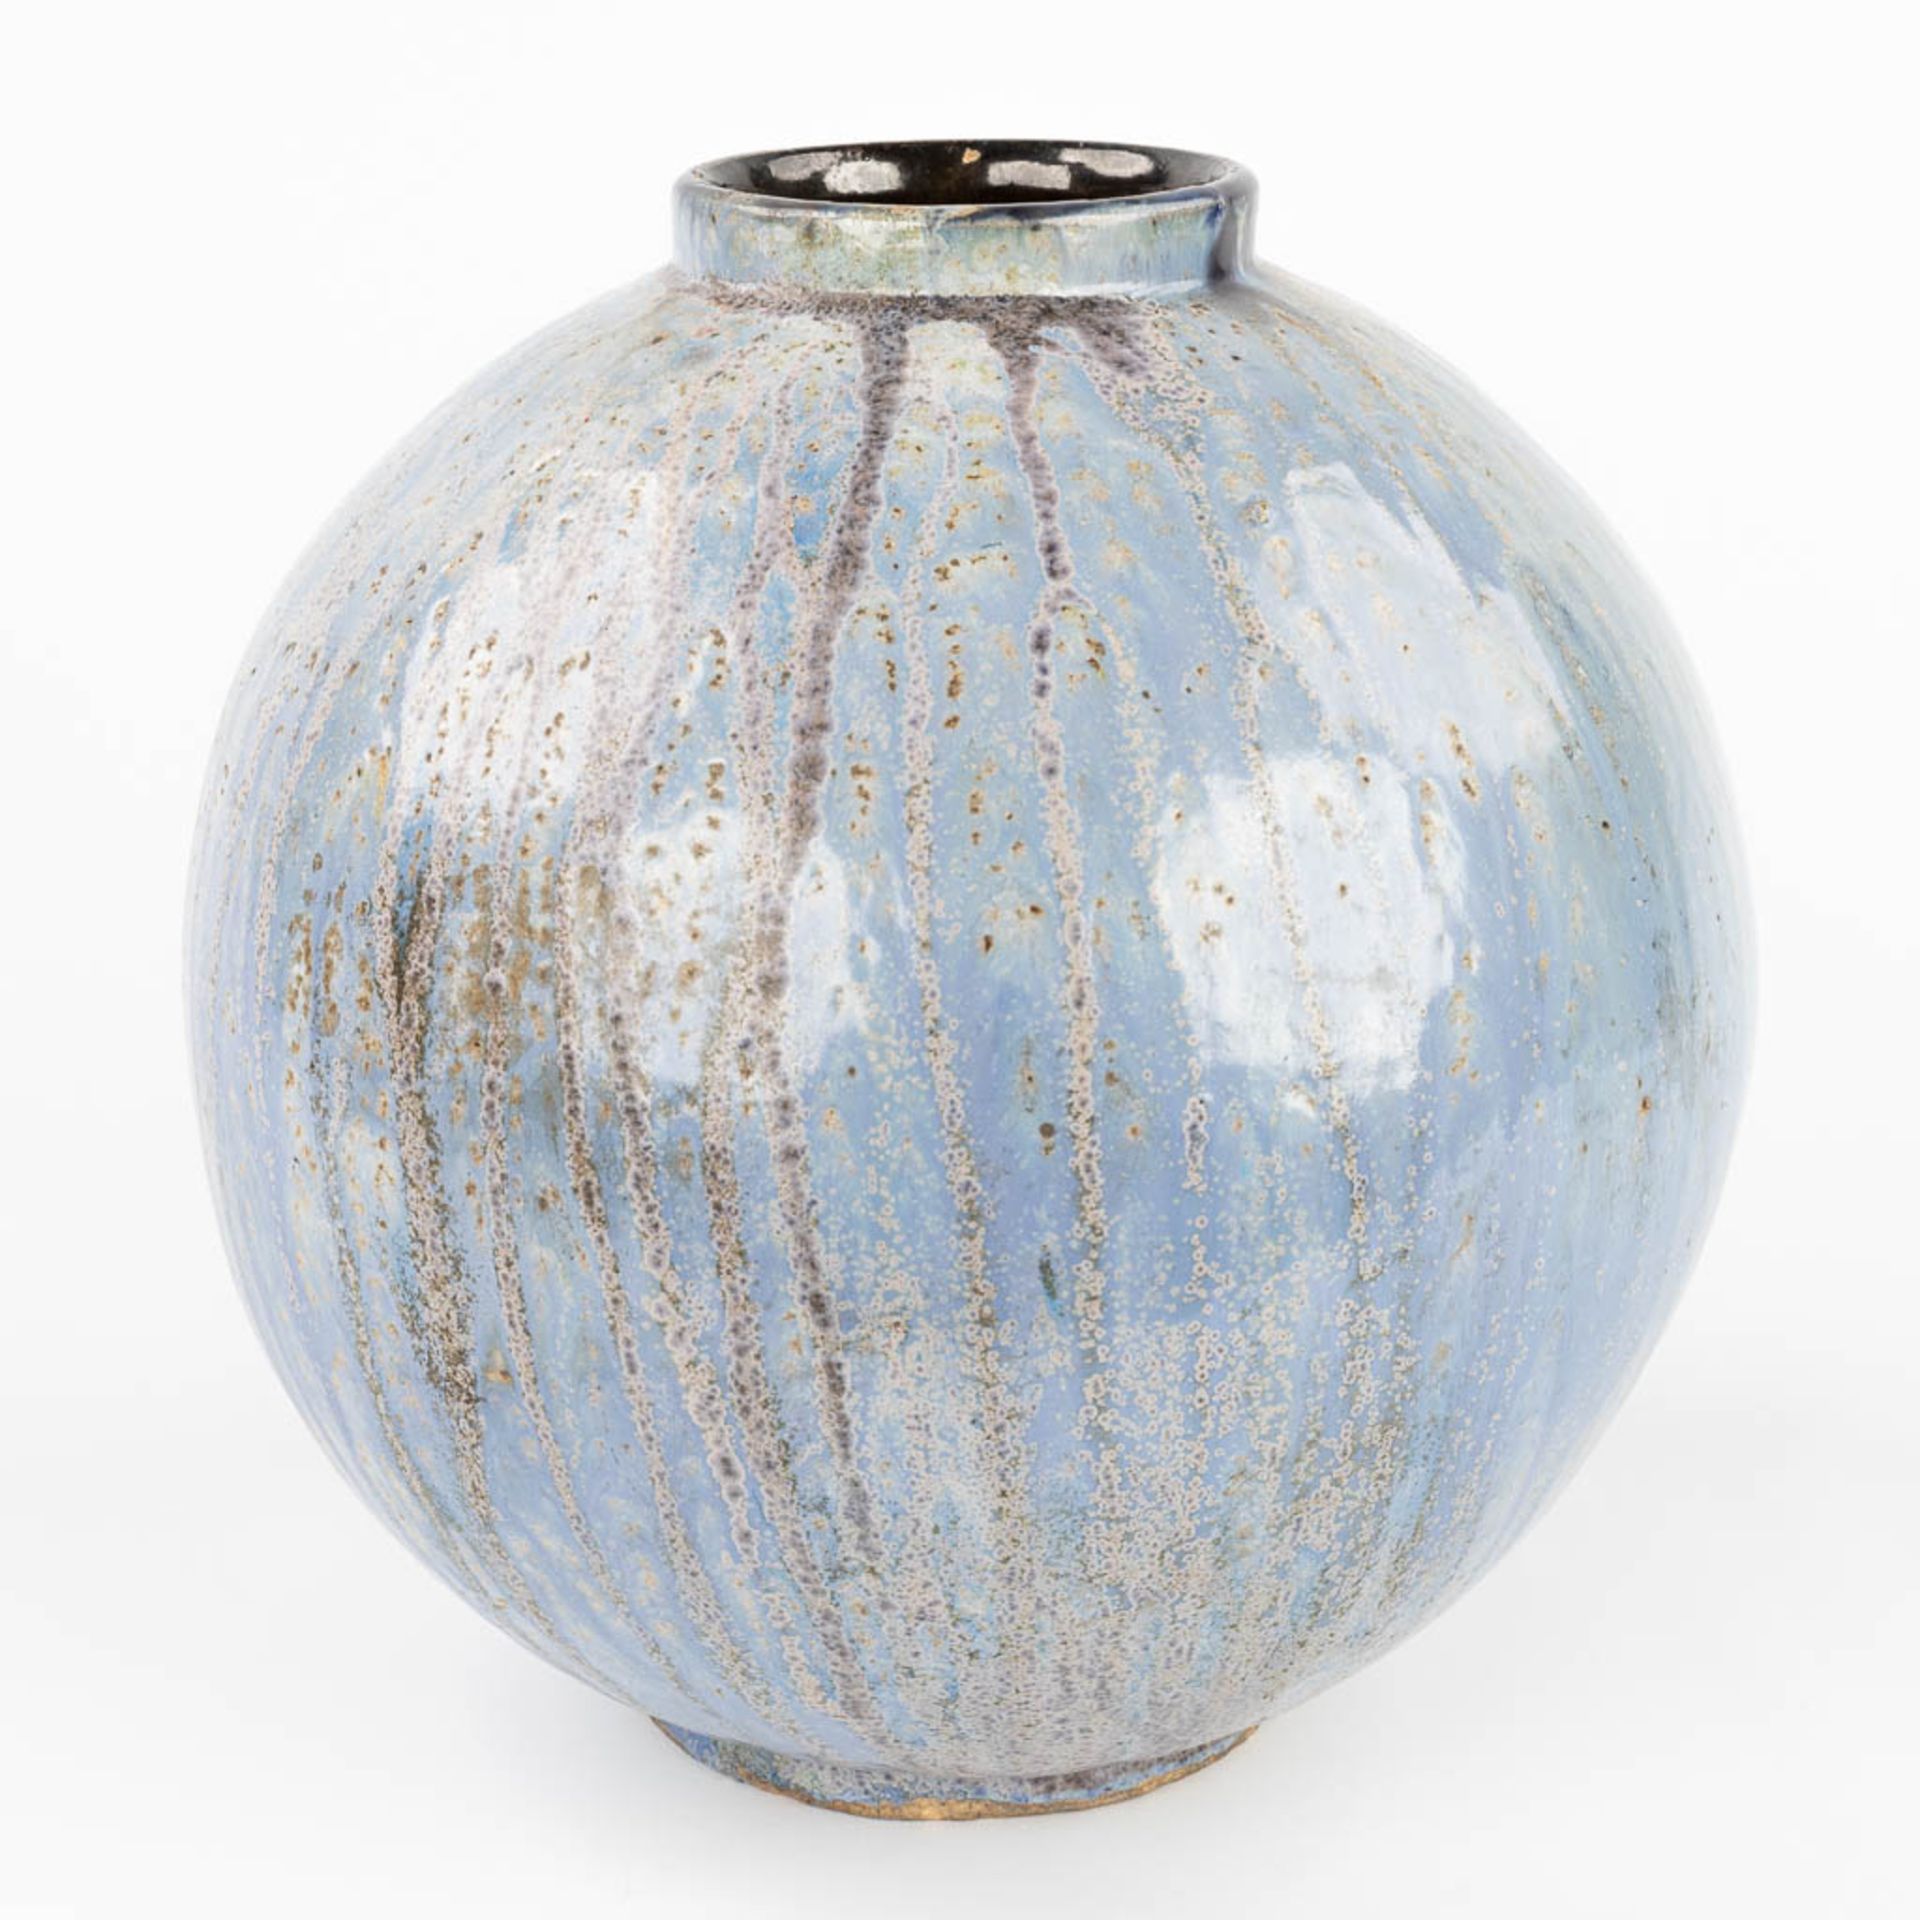 Roger GUERIN (1896-1954) 'Ball Vase', glazed grs. Circa 1920. (W:30 x H:30 cm) - Image 4 of 10